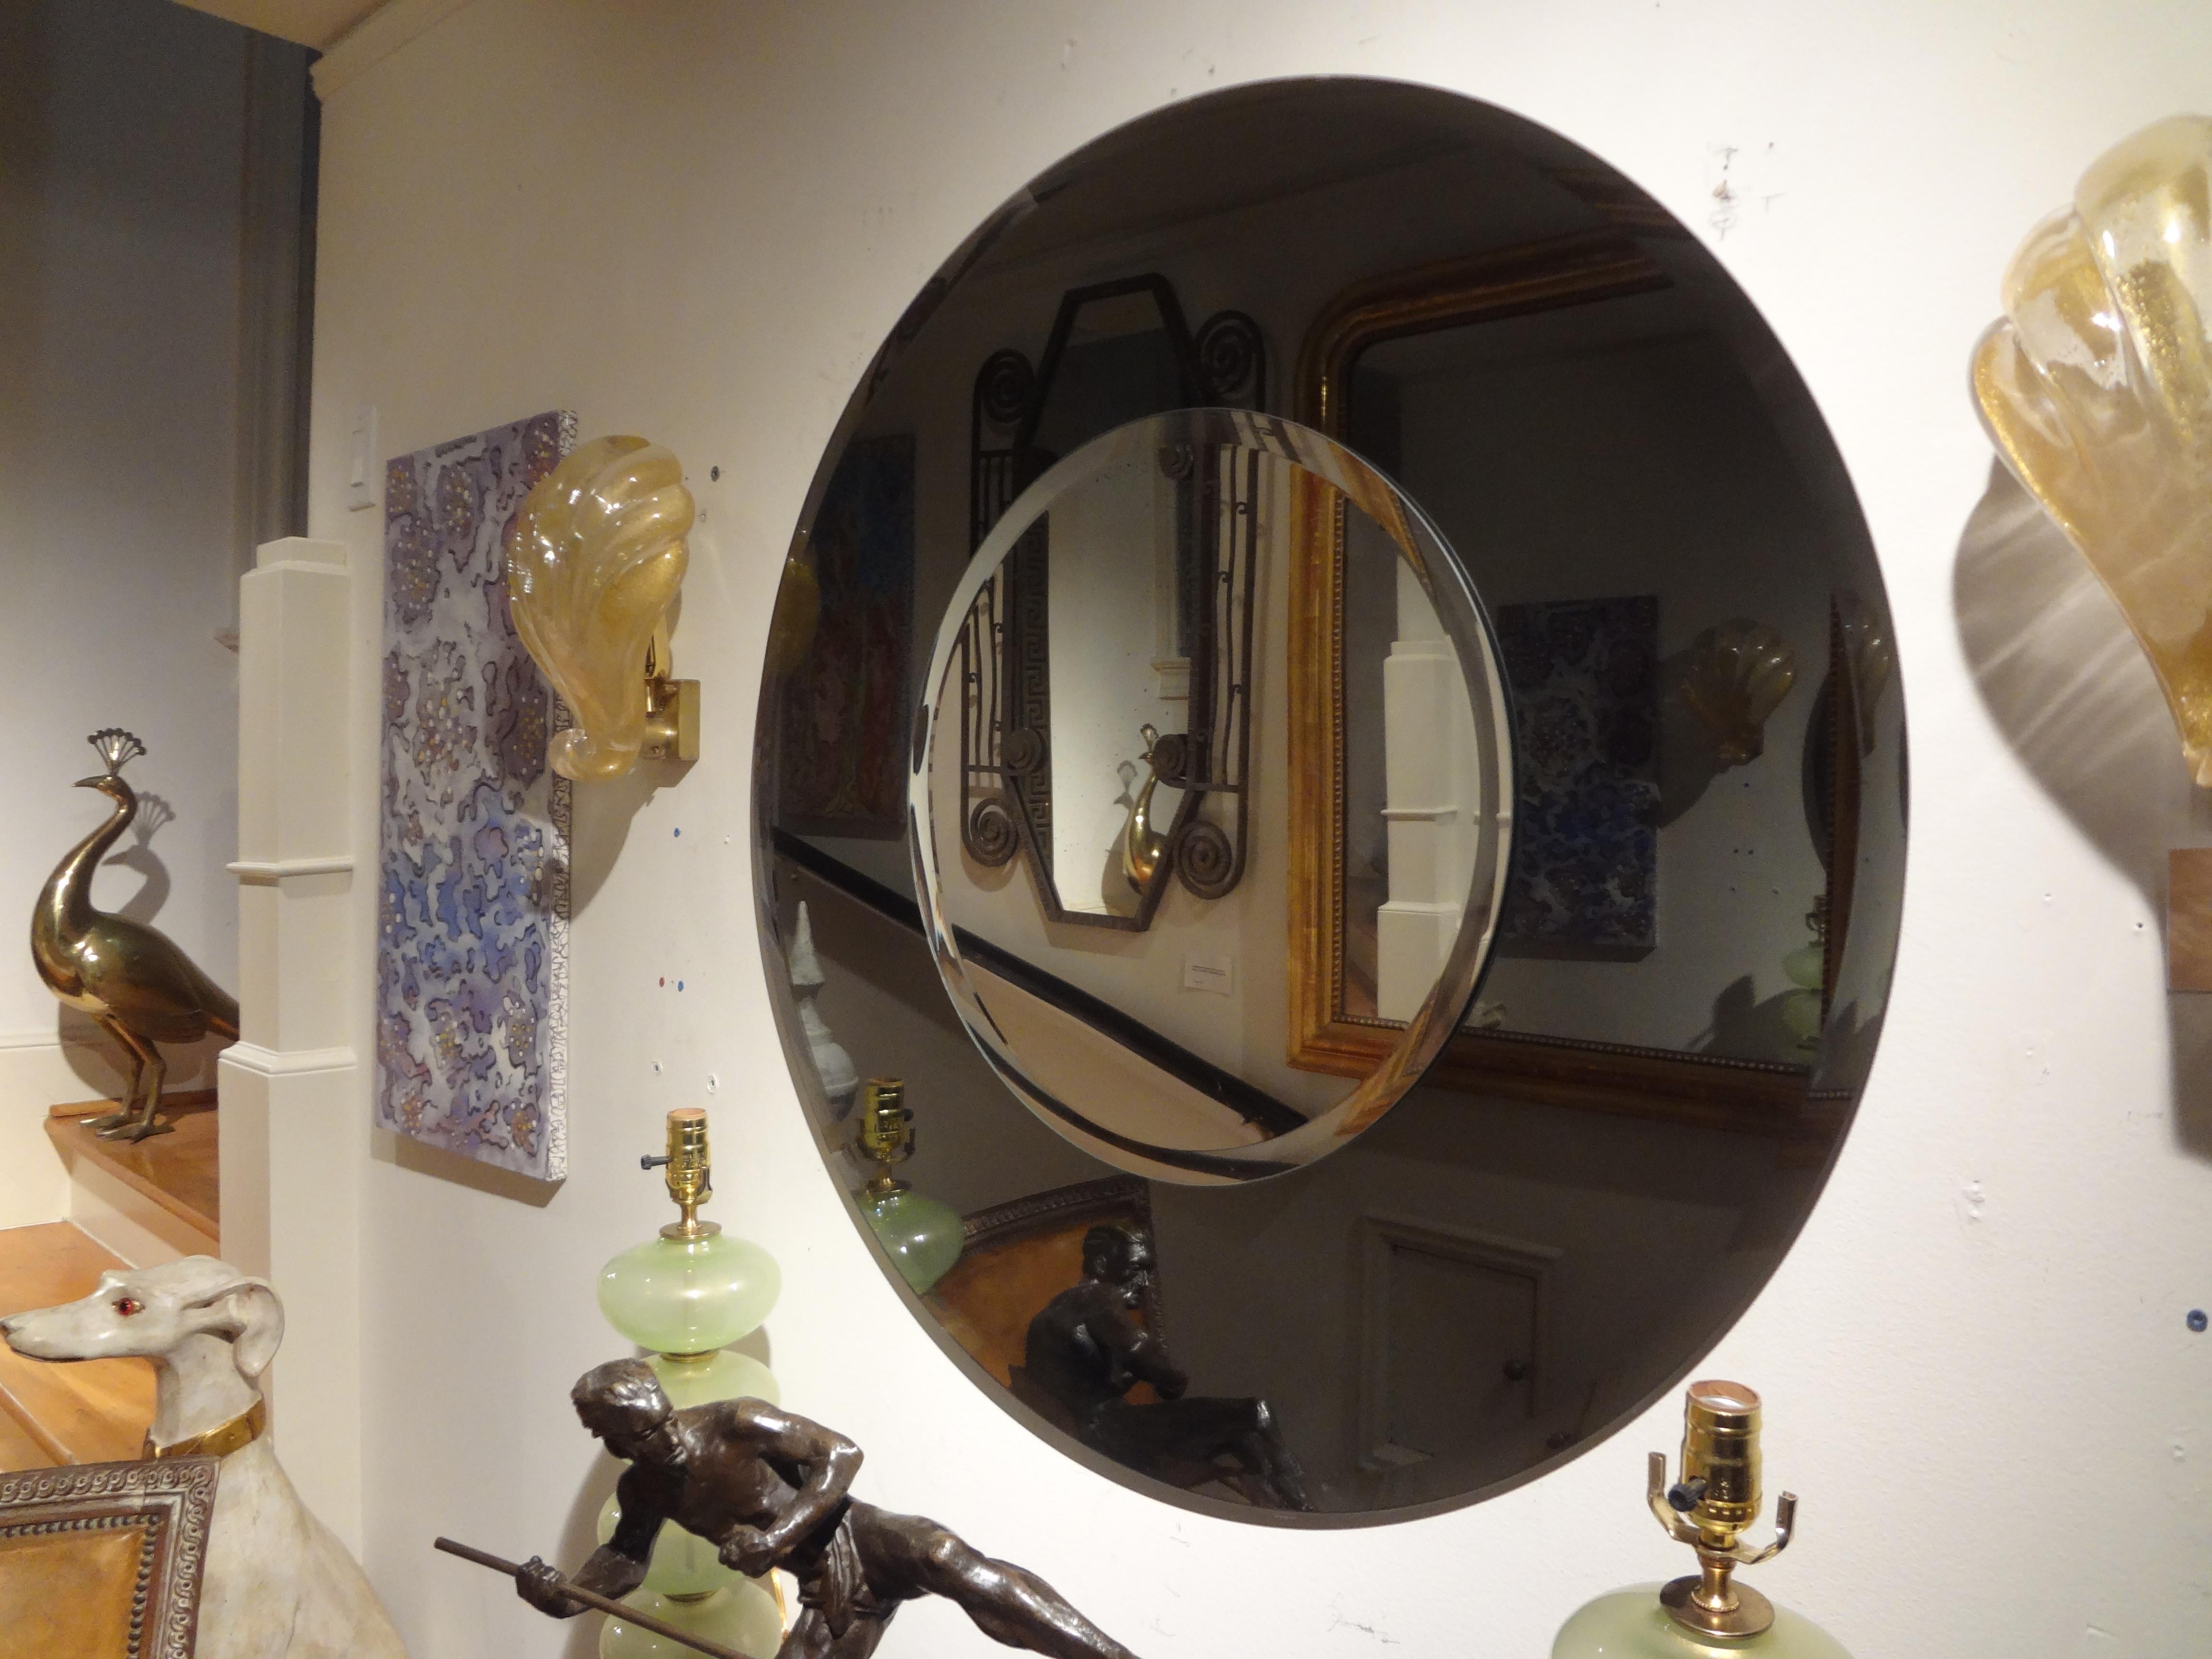 Großer runder, abgeschrägter Spiegel im Stil von Fontana Arte aus Italien.
Atemberaubende große runde italienische Fontana Arte inspiriert runden abgeschrägten Spiegel. Dieser schöne italienische Mid-Century Modern Spiegel hat einen schwarzen